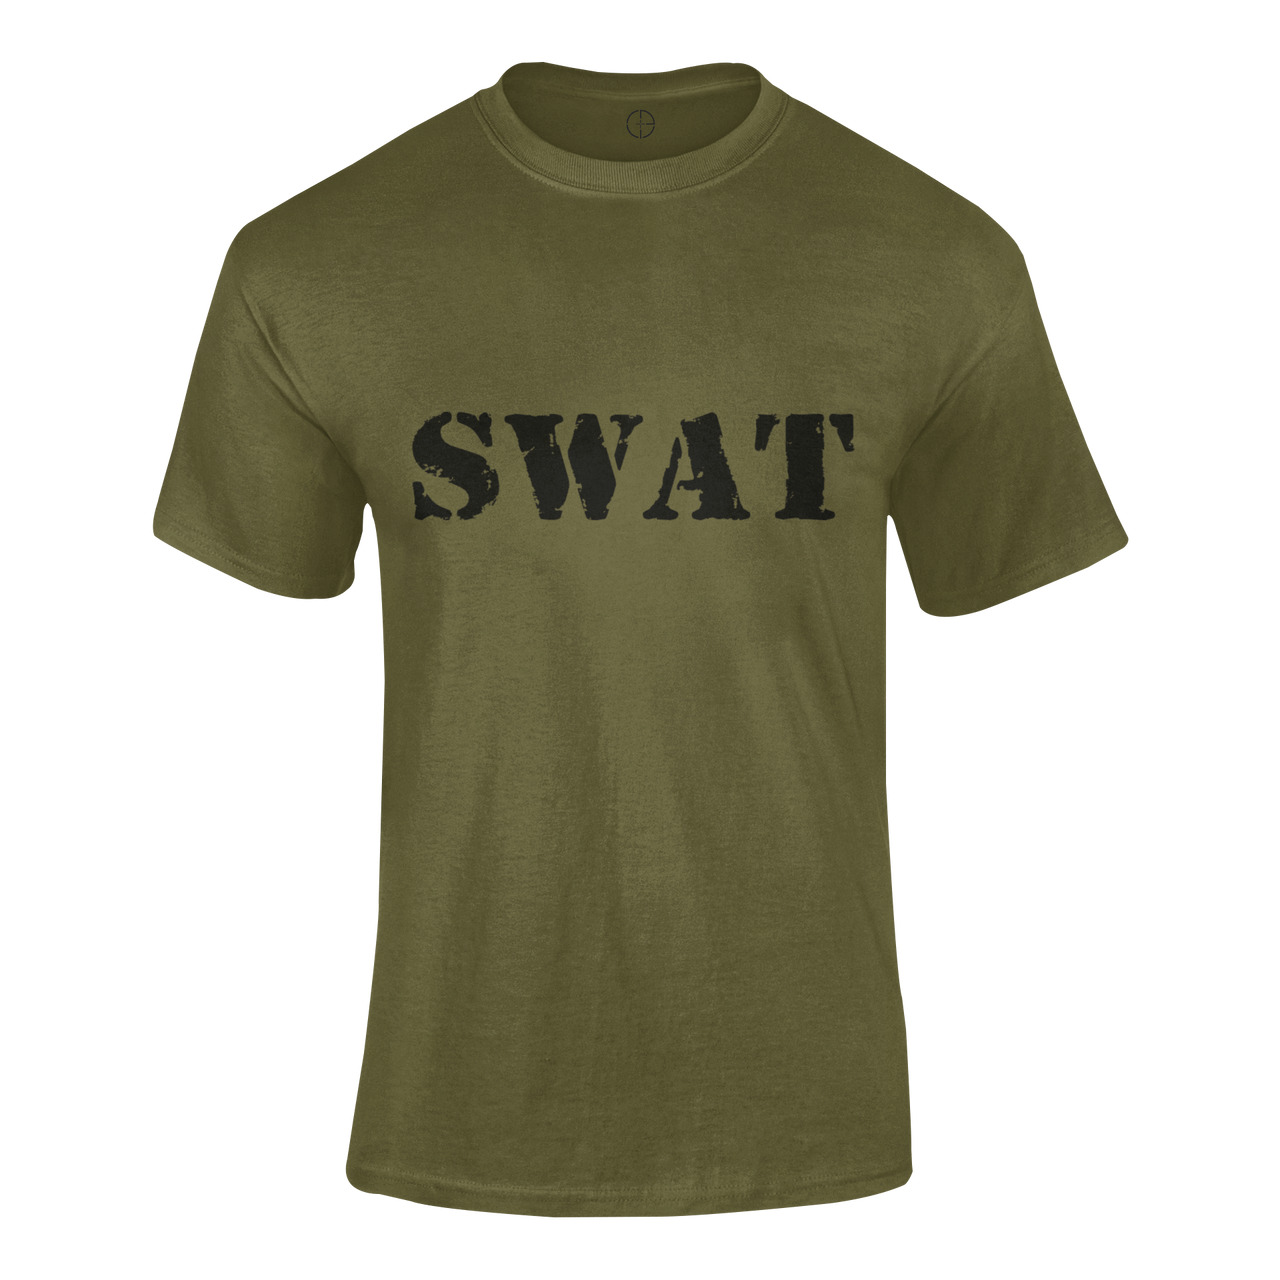 Military T-shirt - SWAT (Men)